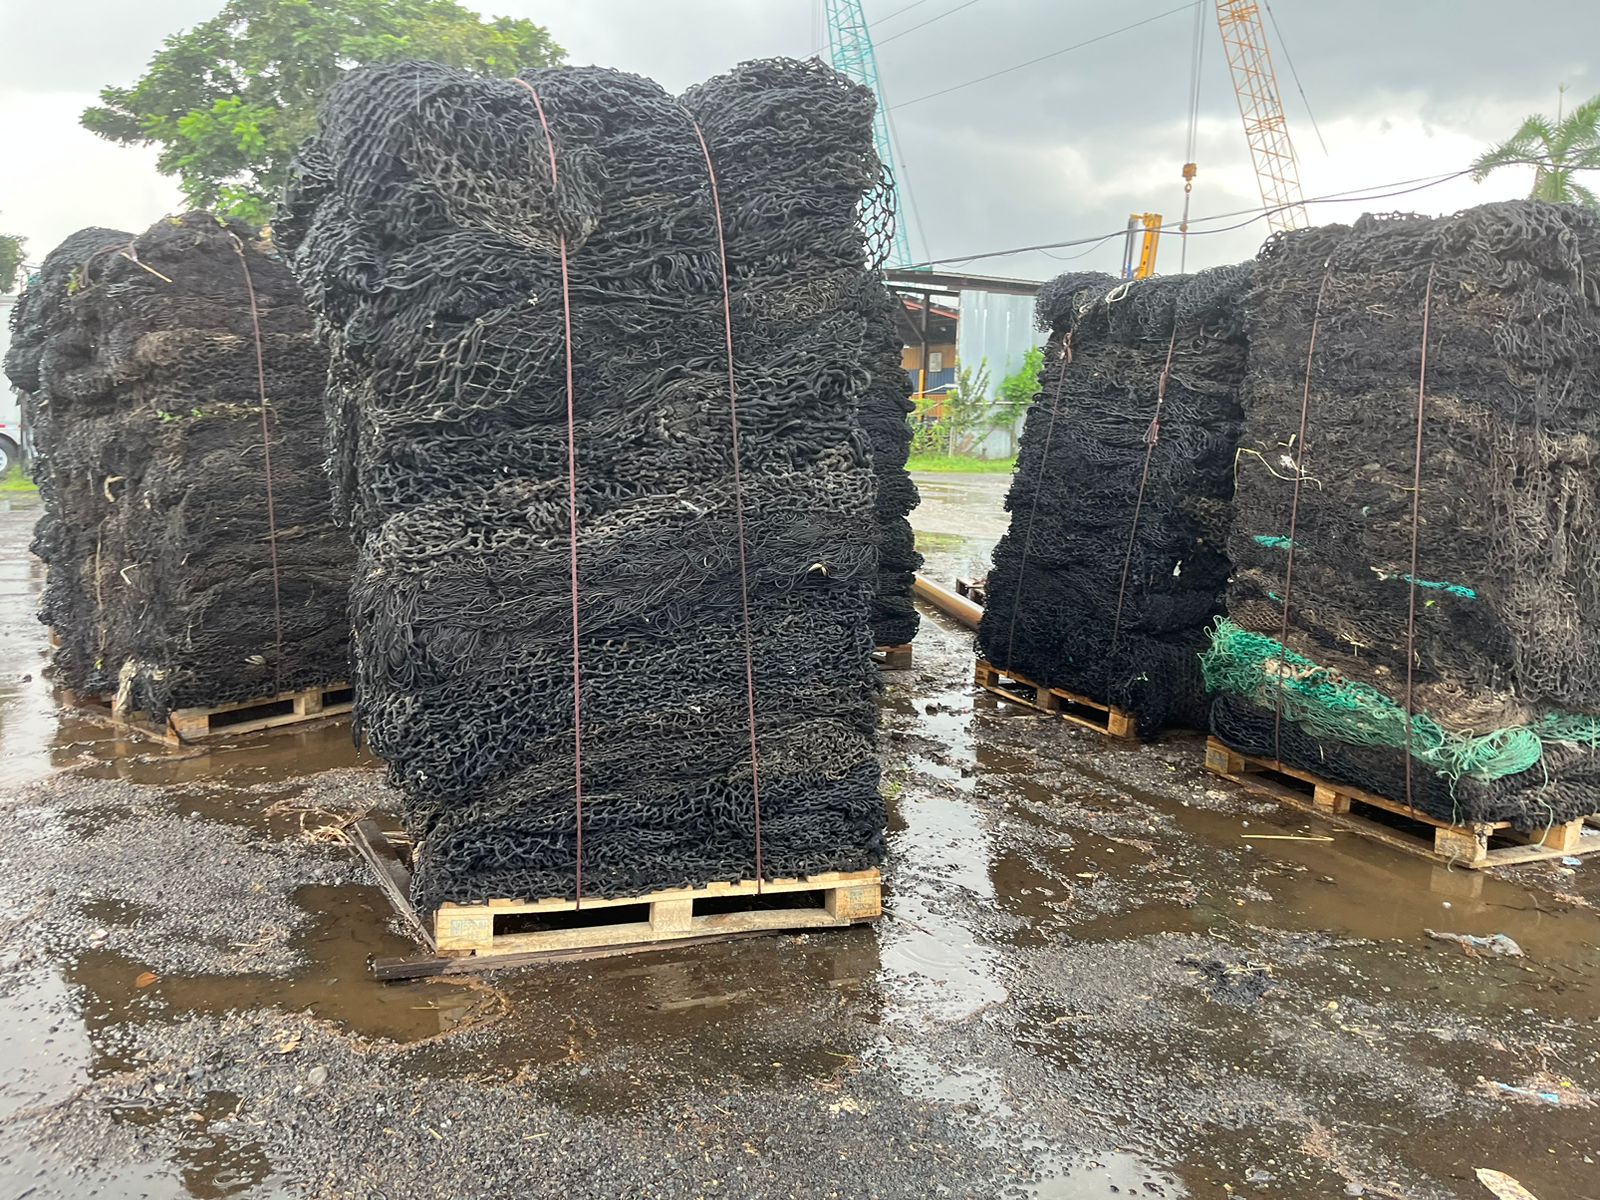 Panamá inició reciclaje de redes de pesca en desuso